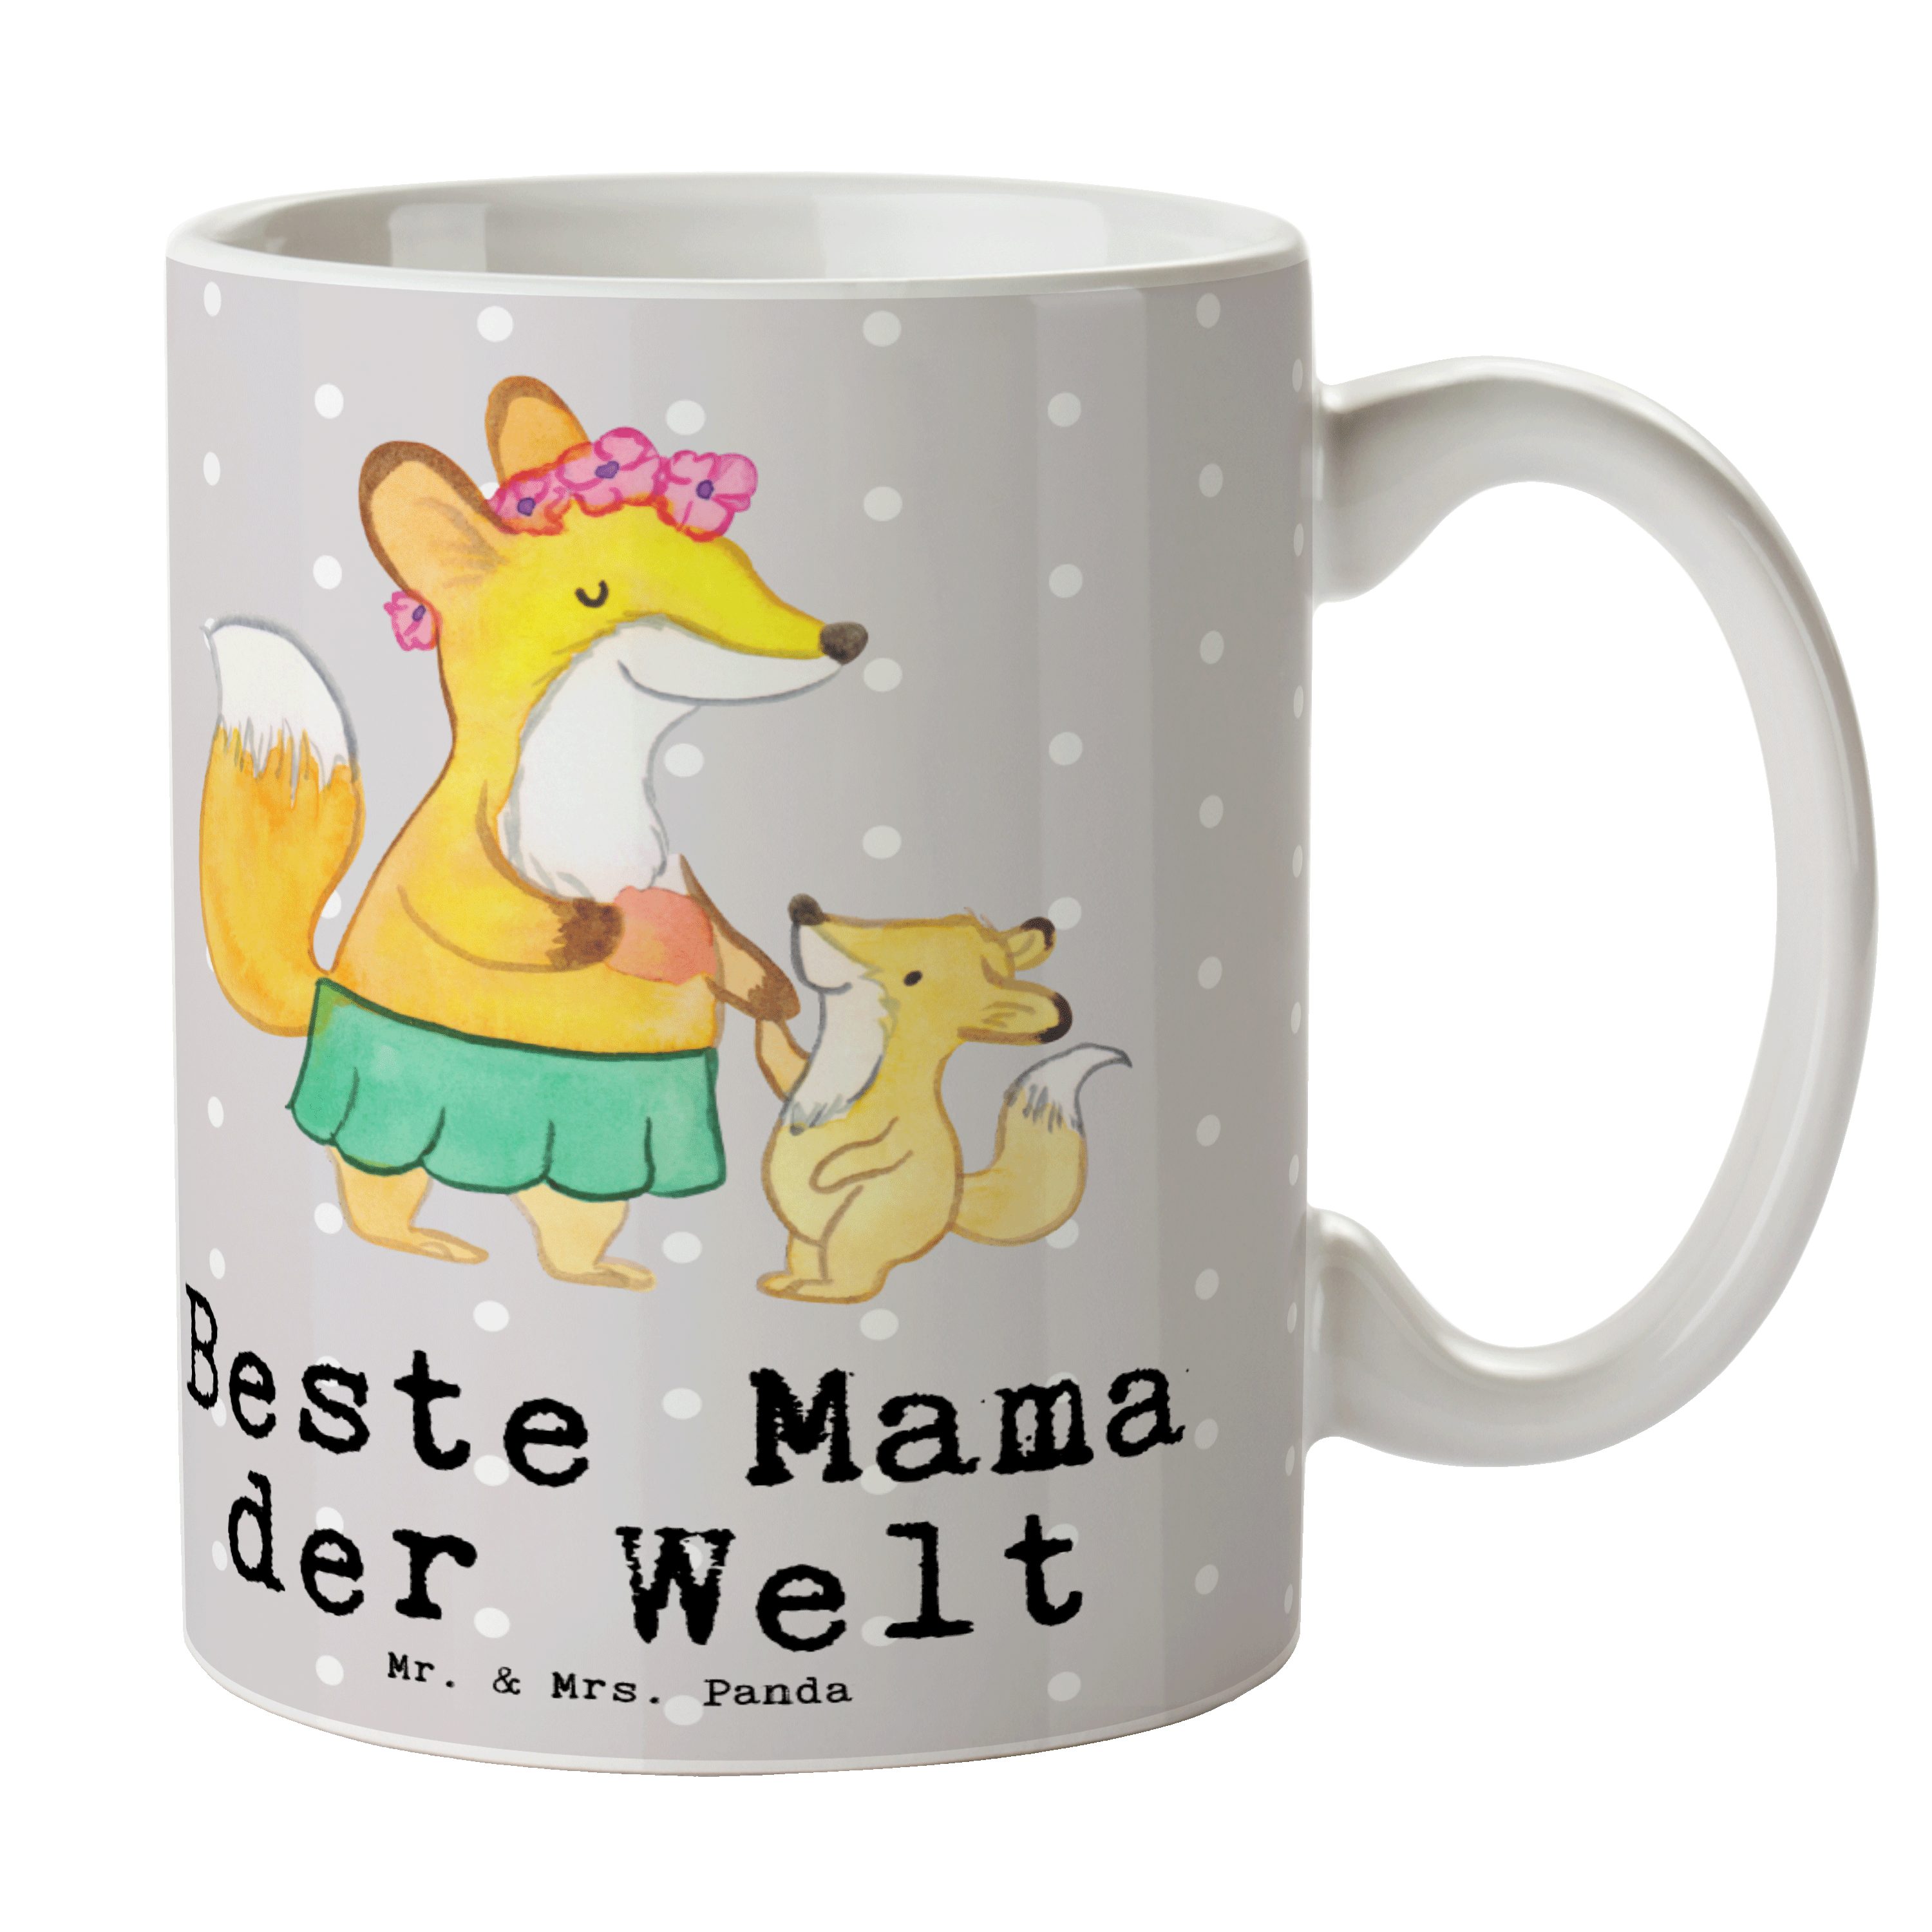 Mr. & Mrs. Panda Tasse Fuchs Beste Mama der Welt - Grau Pastell - Geschenk, Teebecher, Kaffe, Keramik